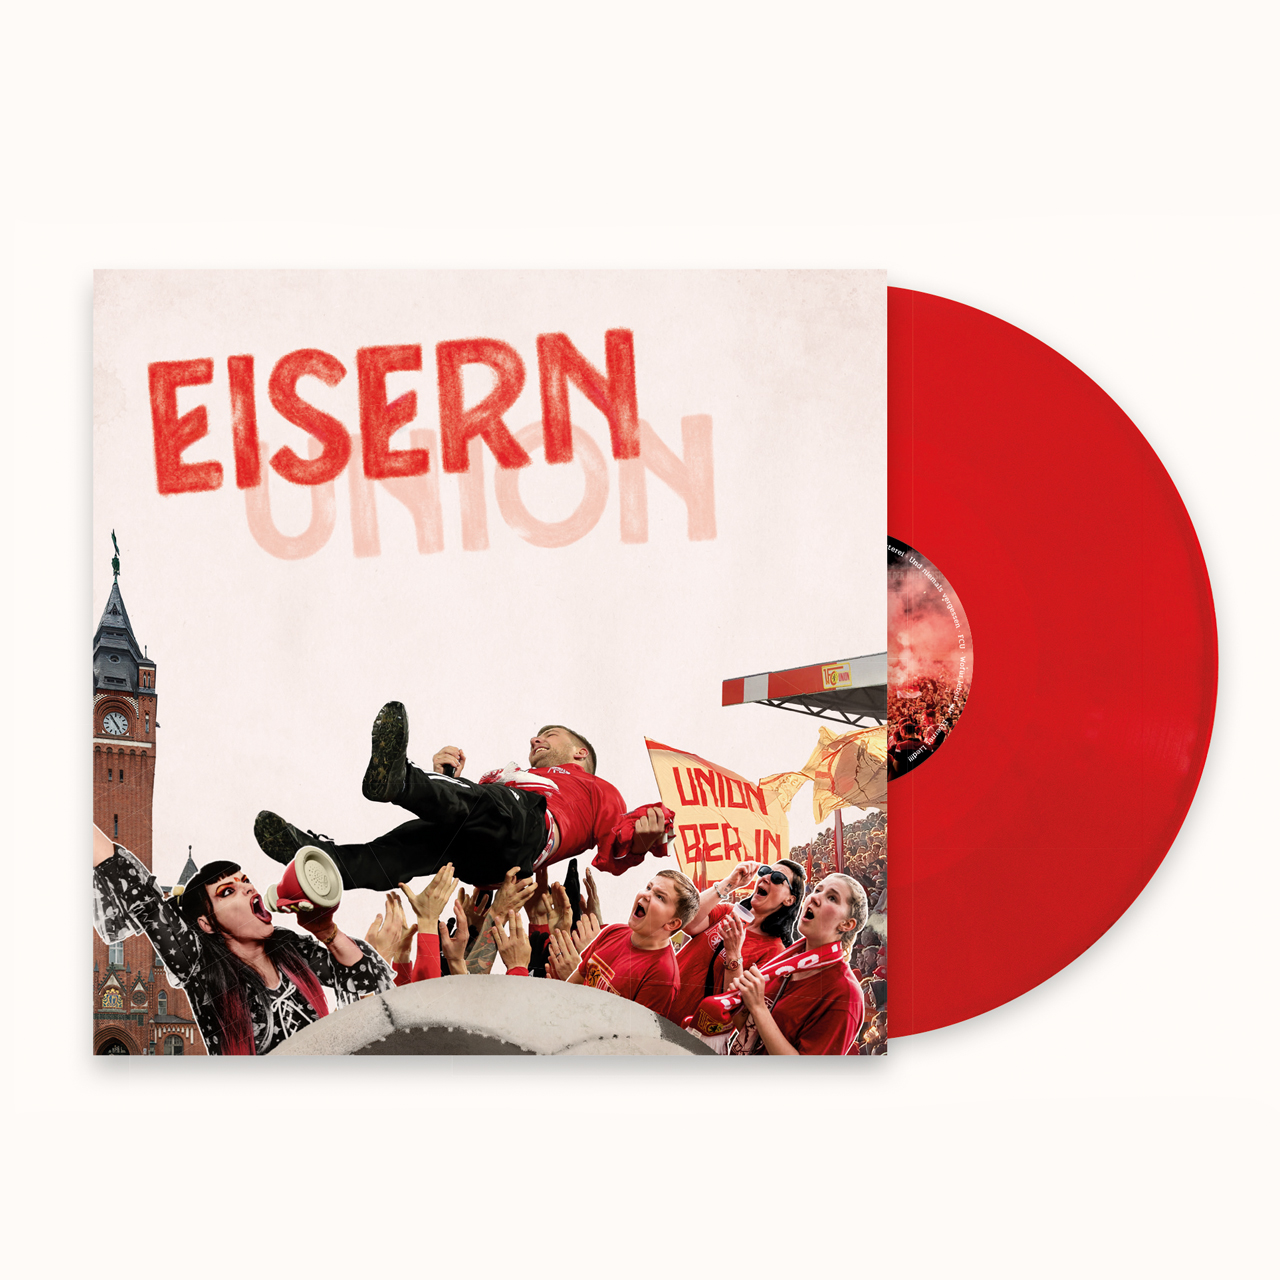 Eisern Union Sampler Vinyl LP